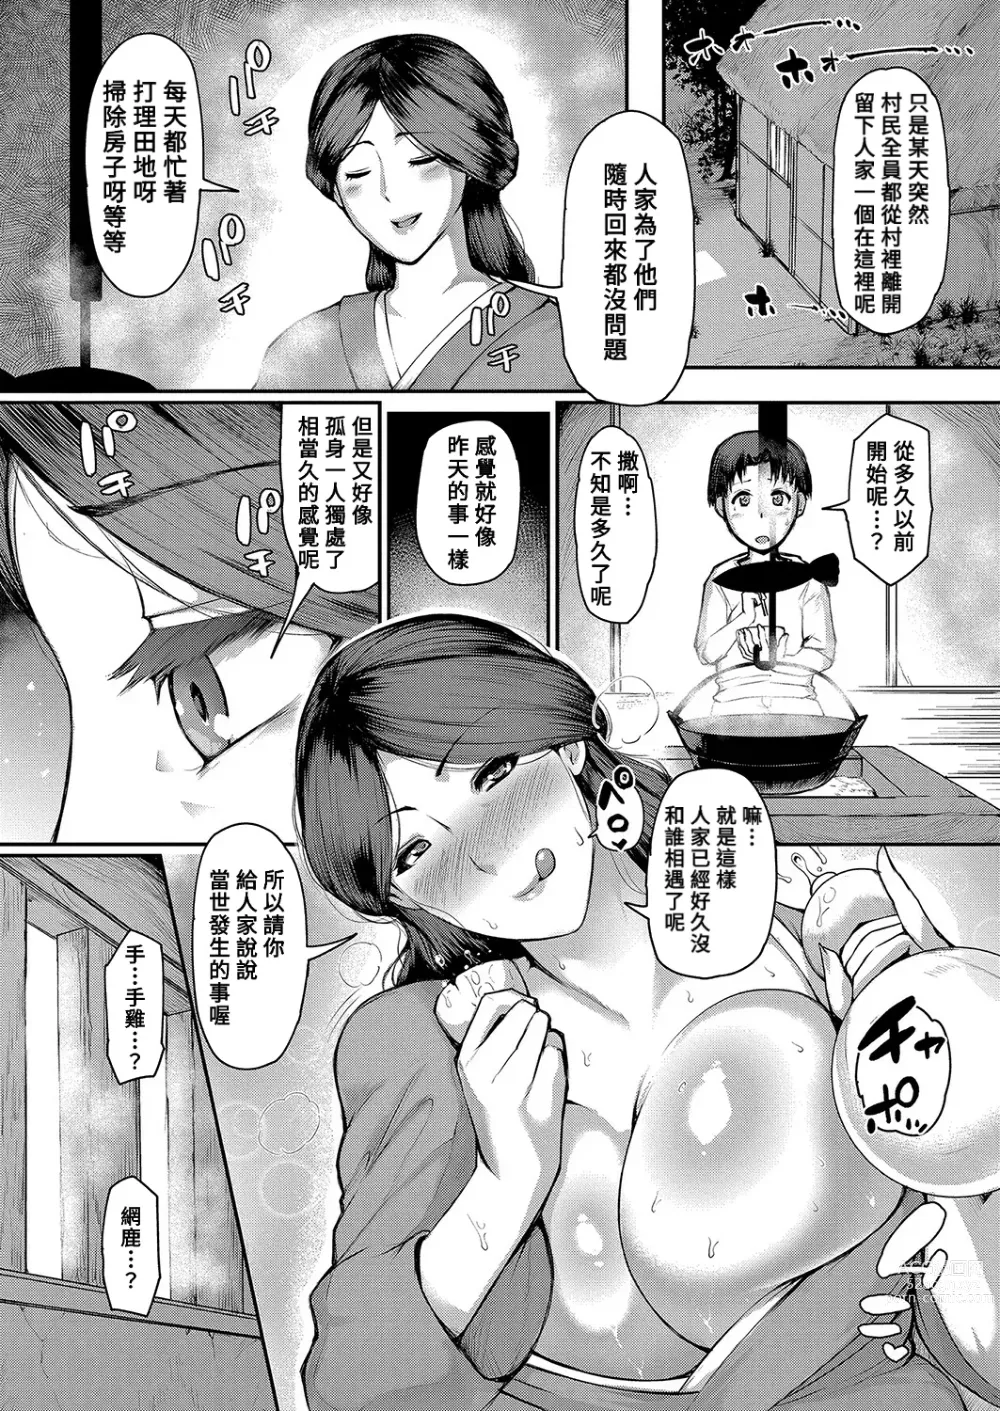 Page 5 of manga Yamajyukujyo